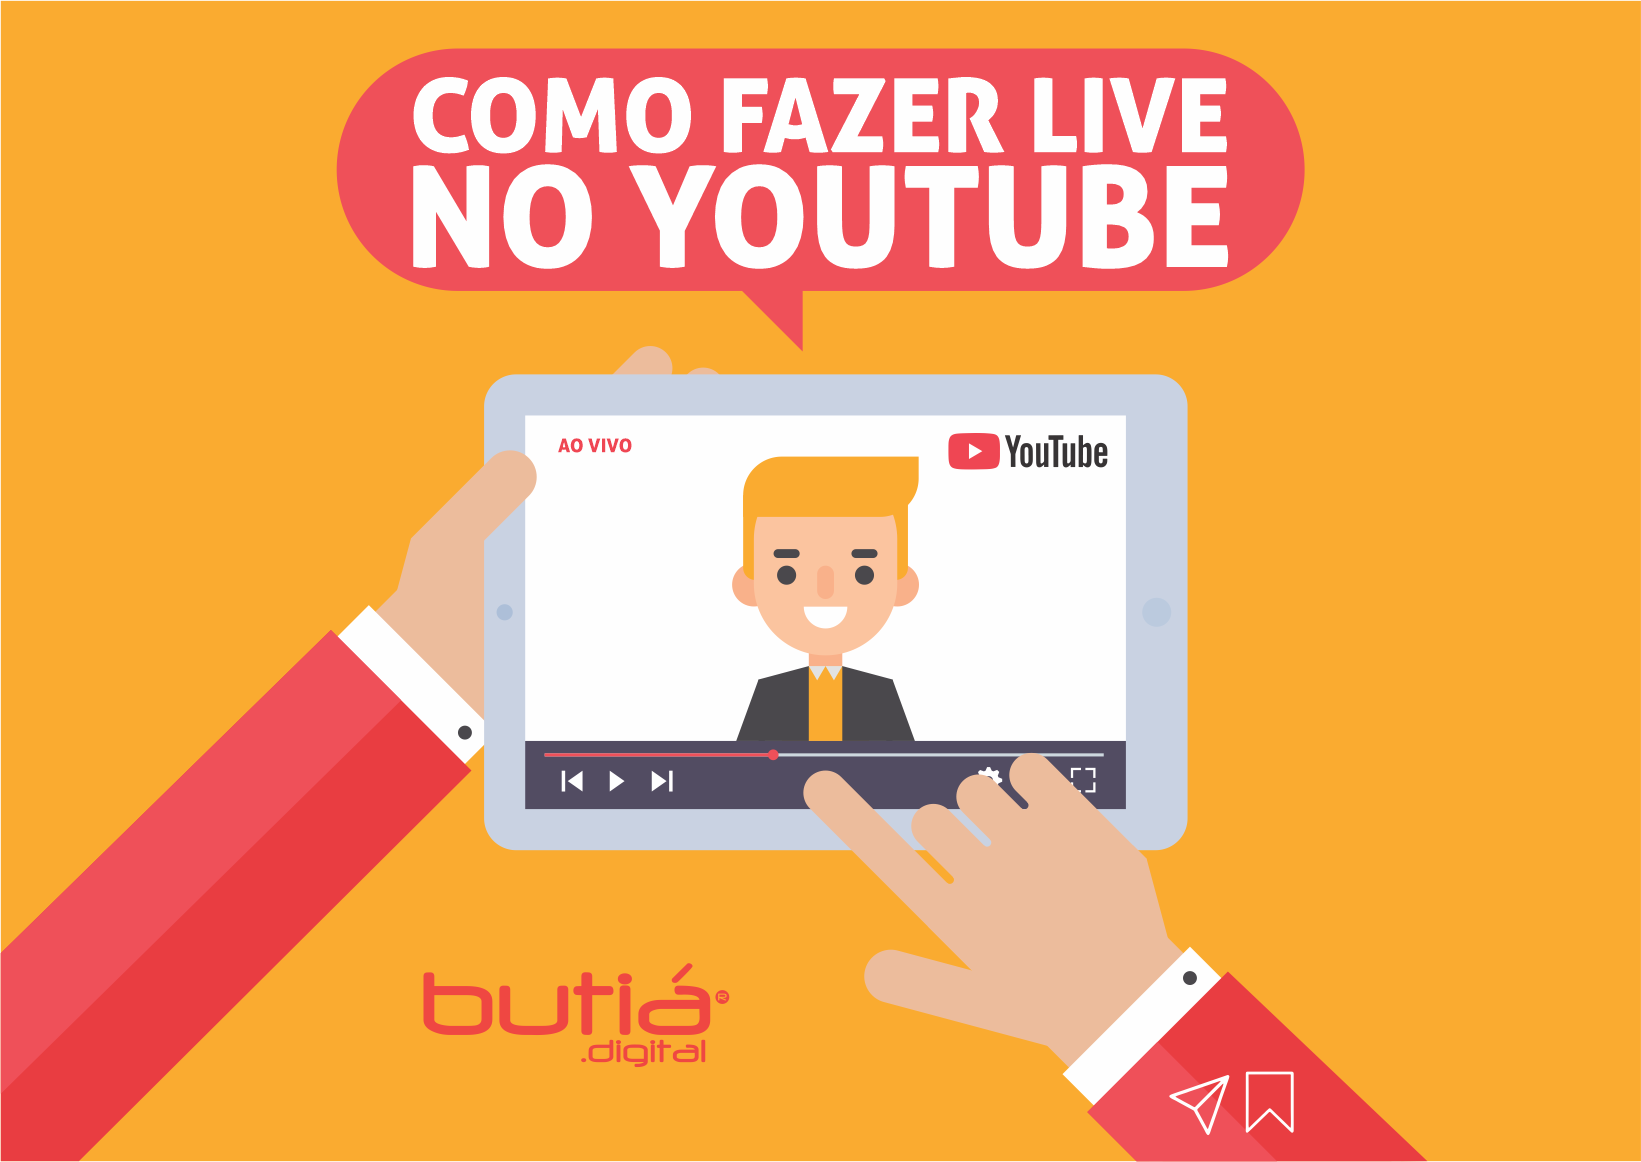 Download COMO FAZER LIVE NO YOUTUBE - BUTIÁ DIGITAL